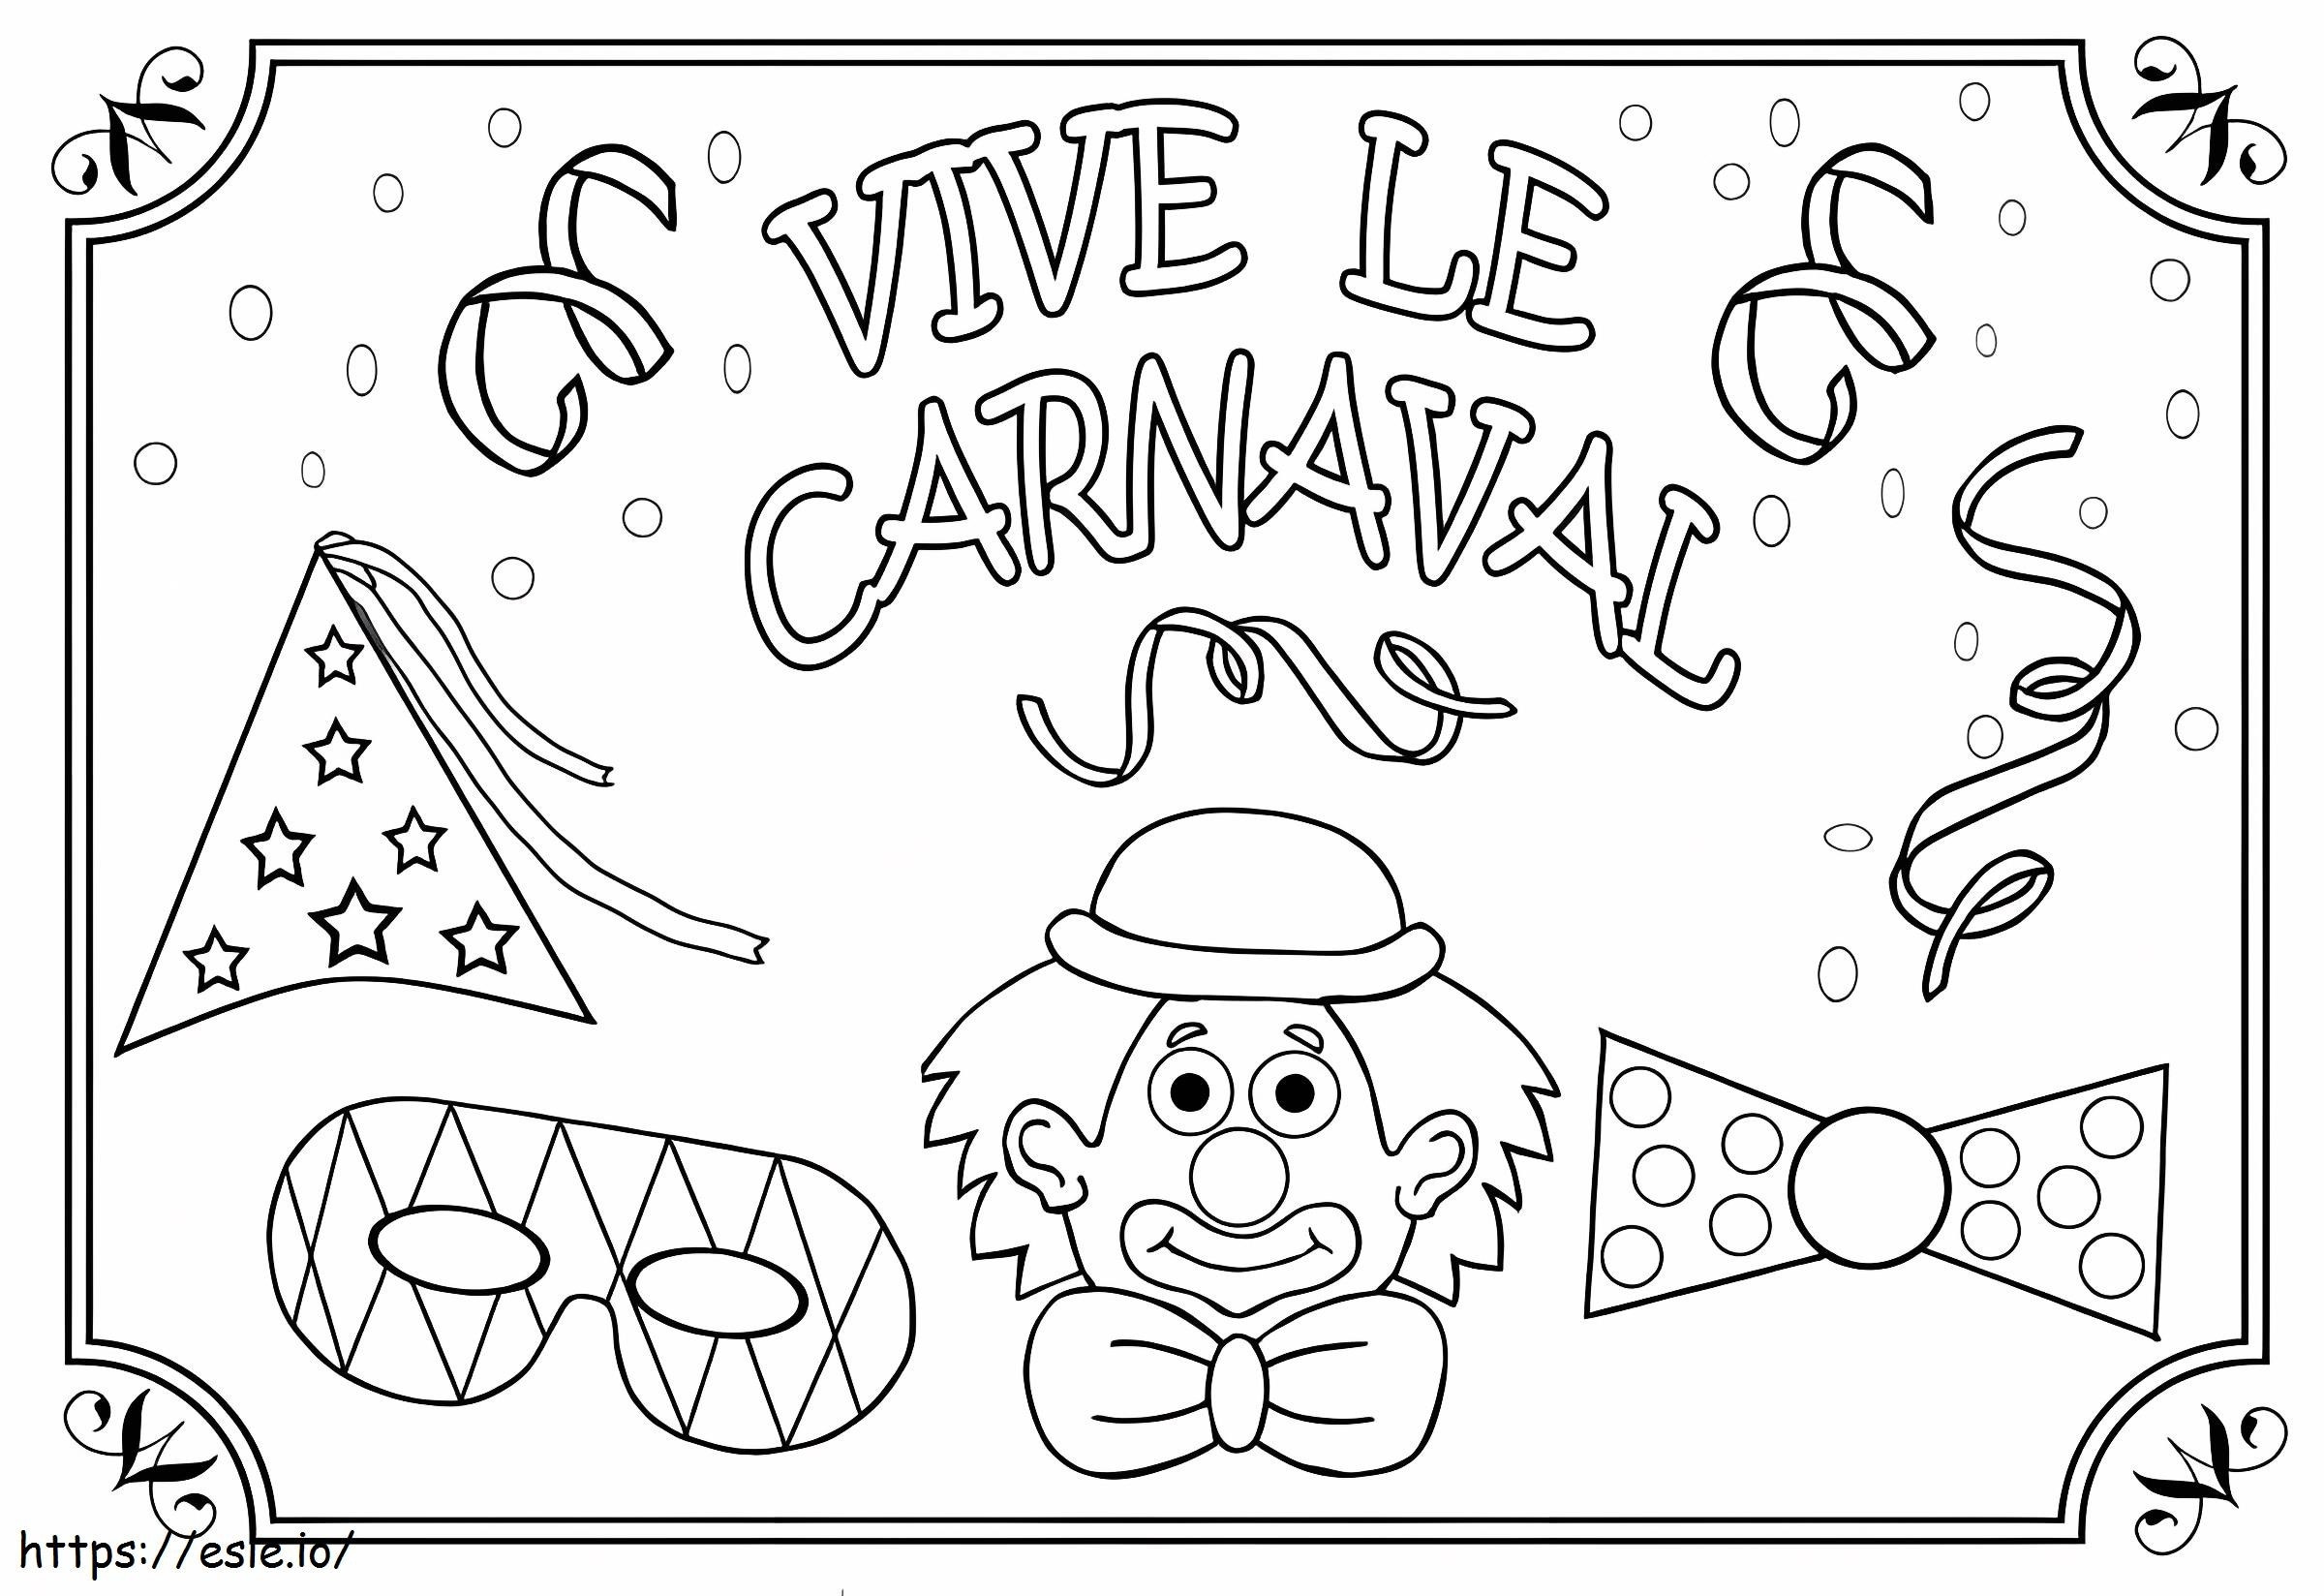 Carnaval 7 para colorir